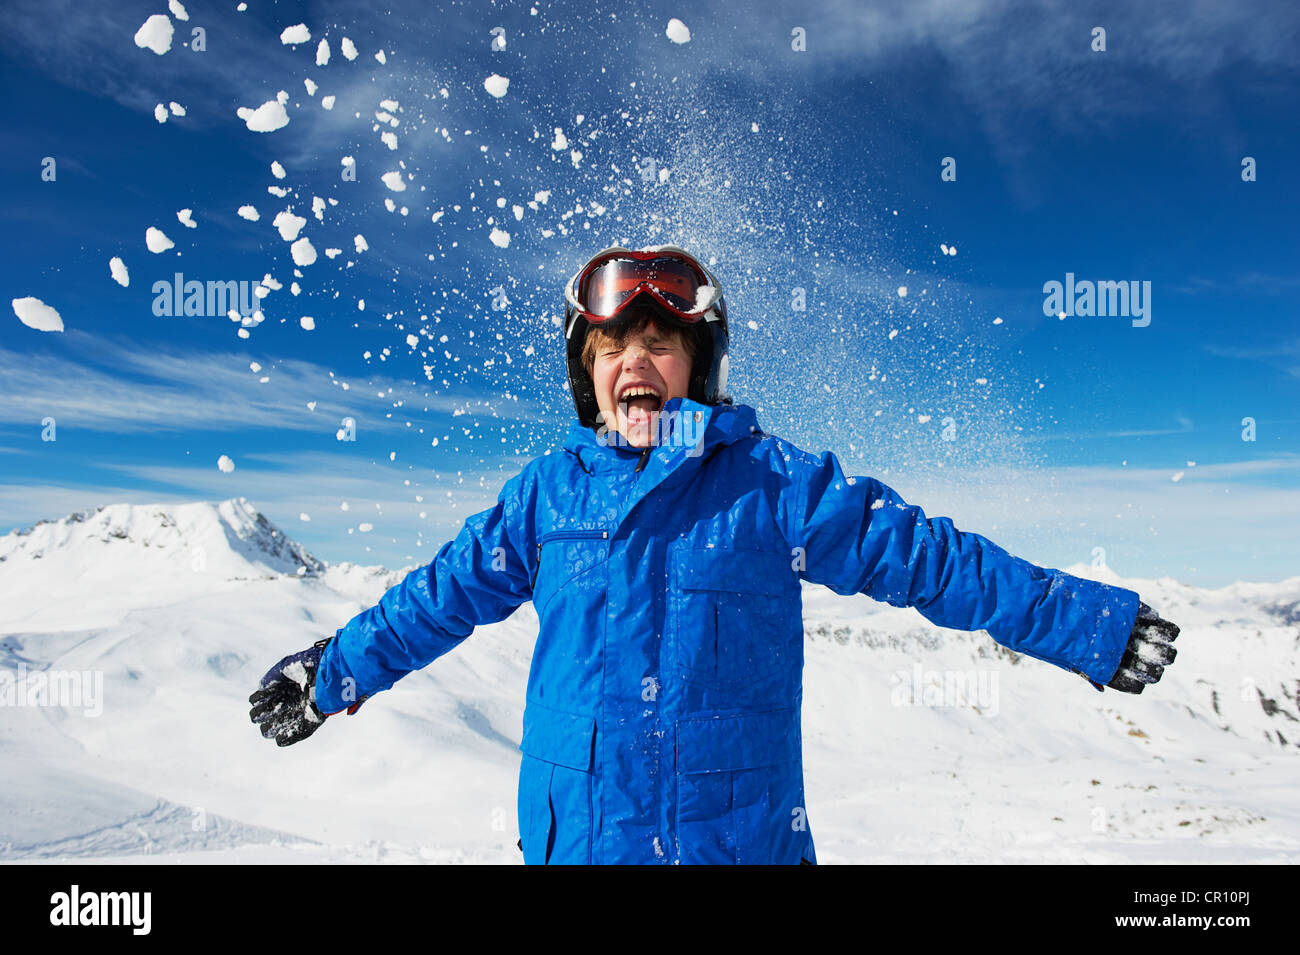 Junge auf verschneite Berggipfel jubeln Stockfoto